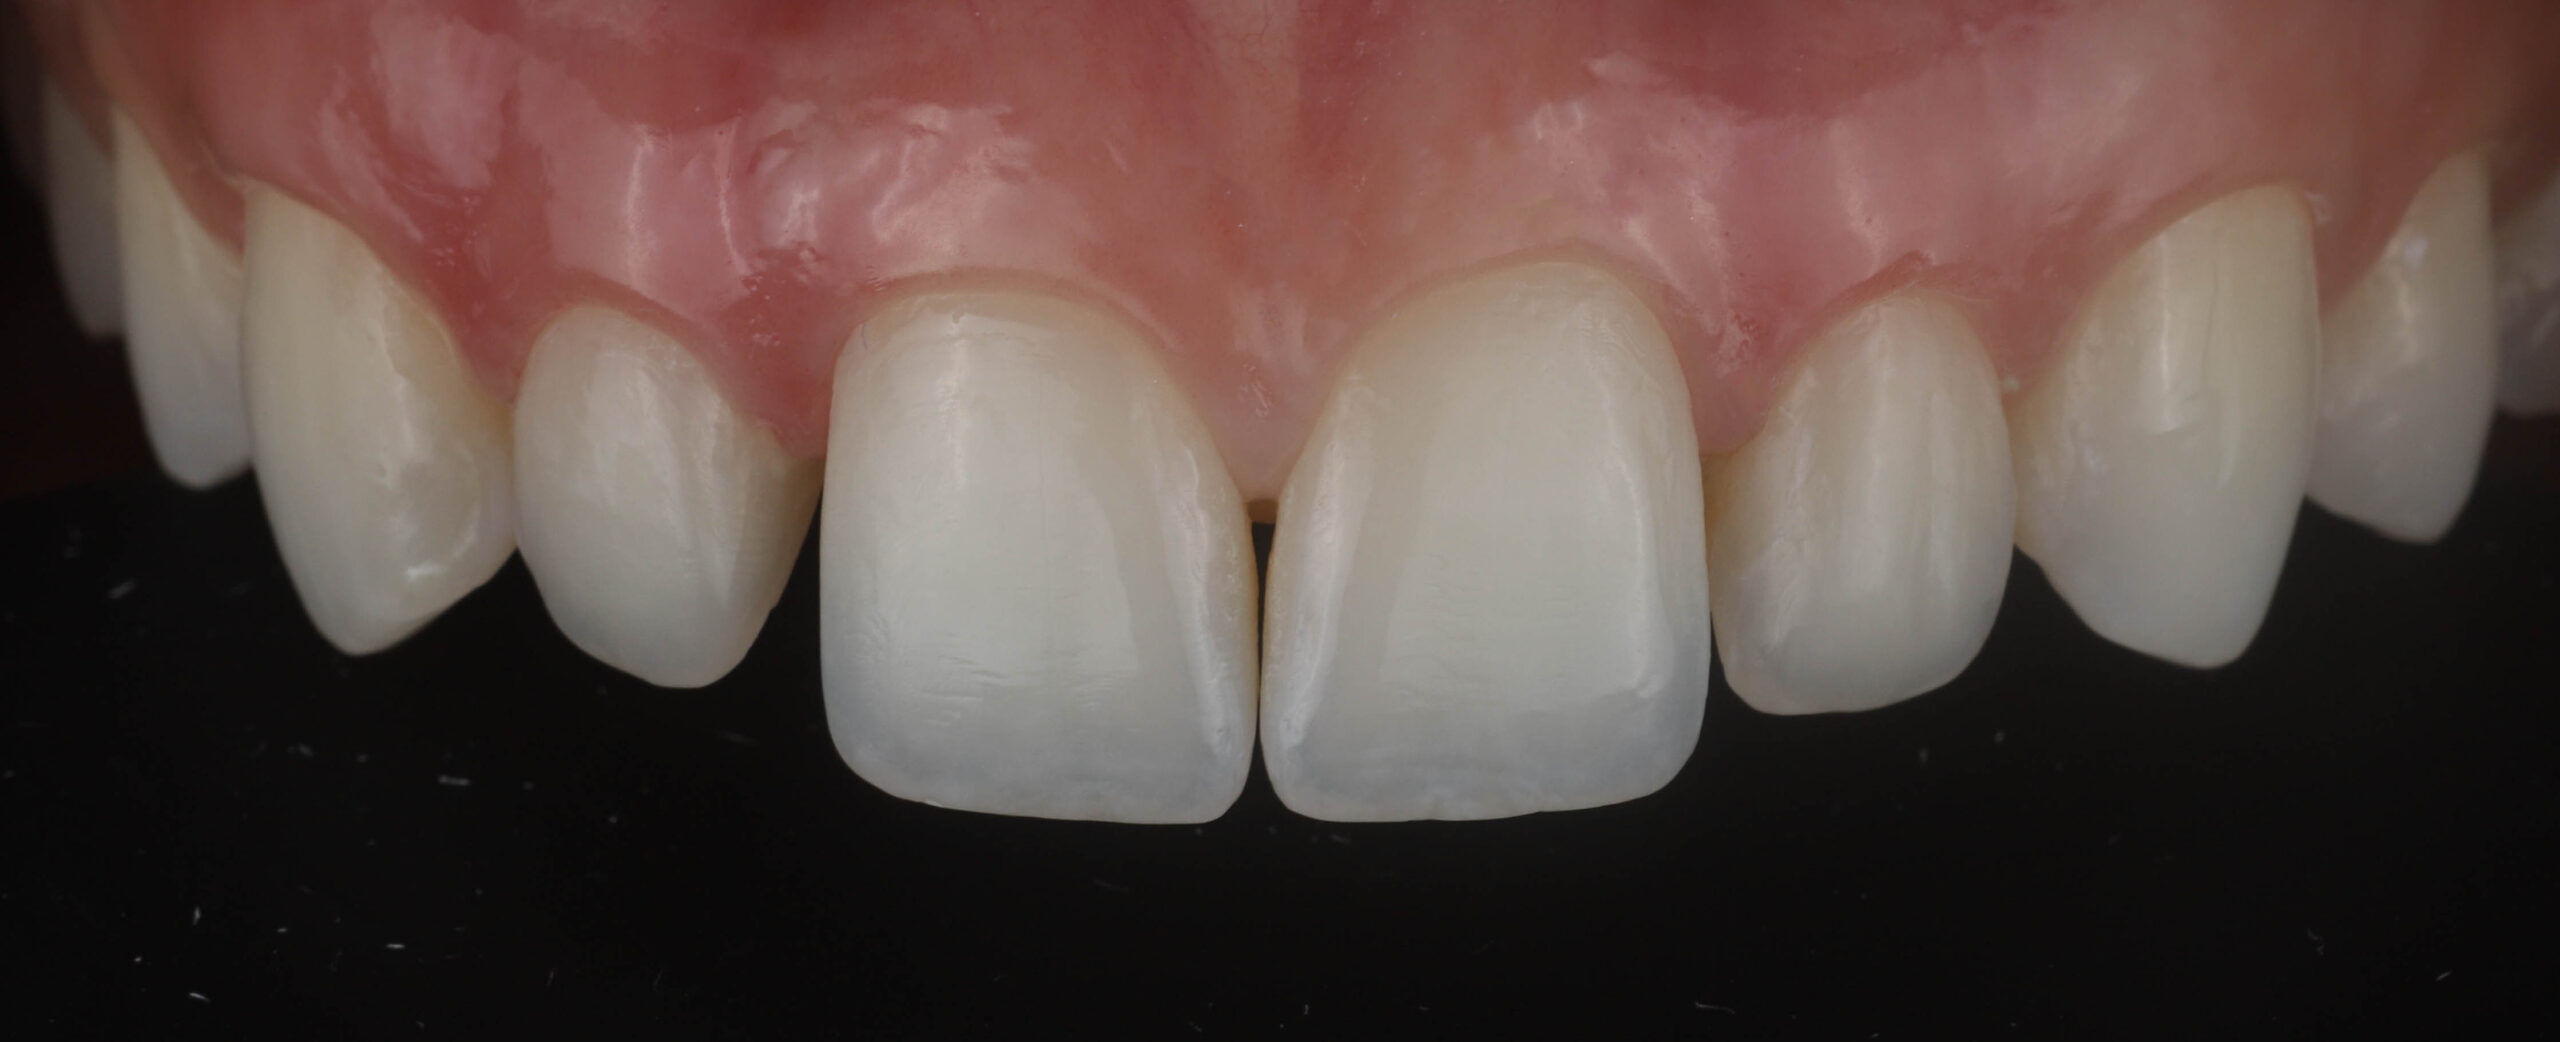 Fig. 2 - Aparência dentária após a remoção das restaurações antigas.